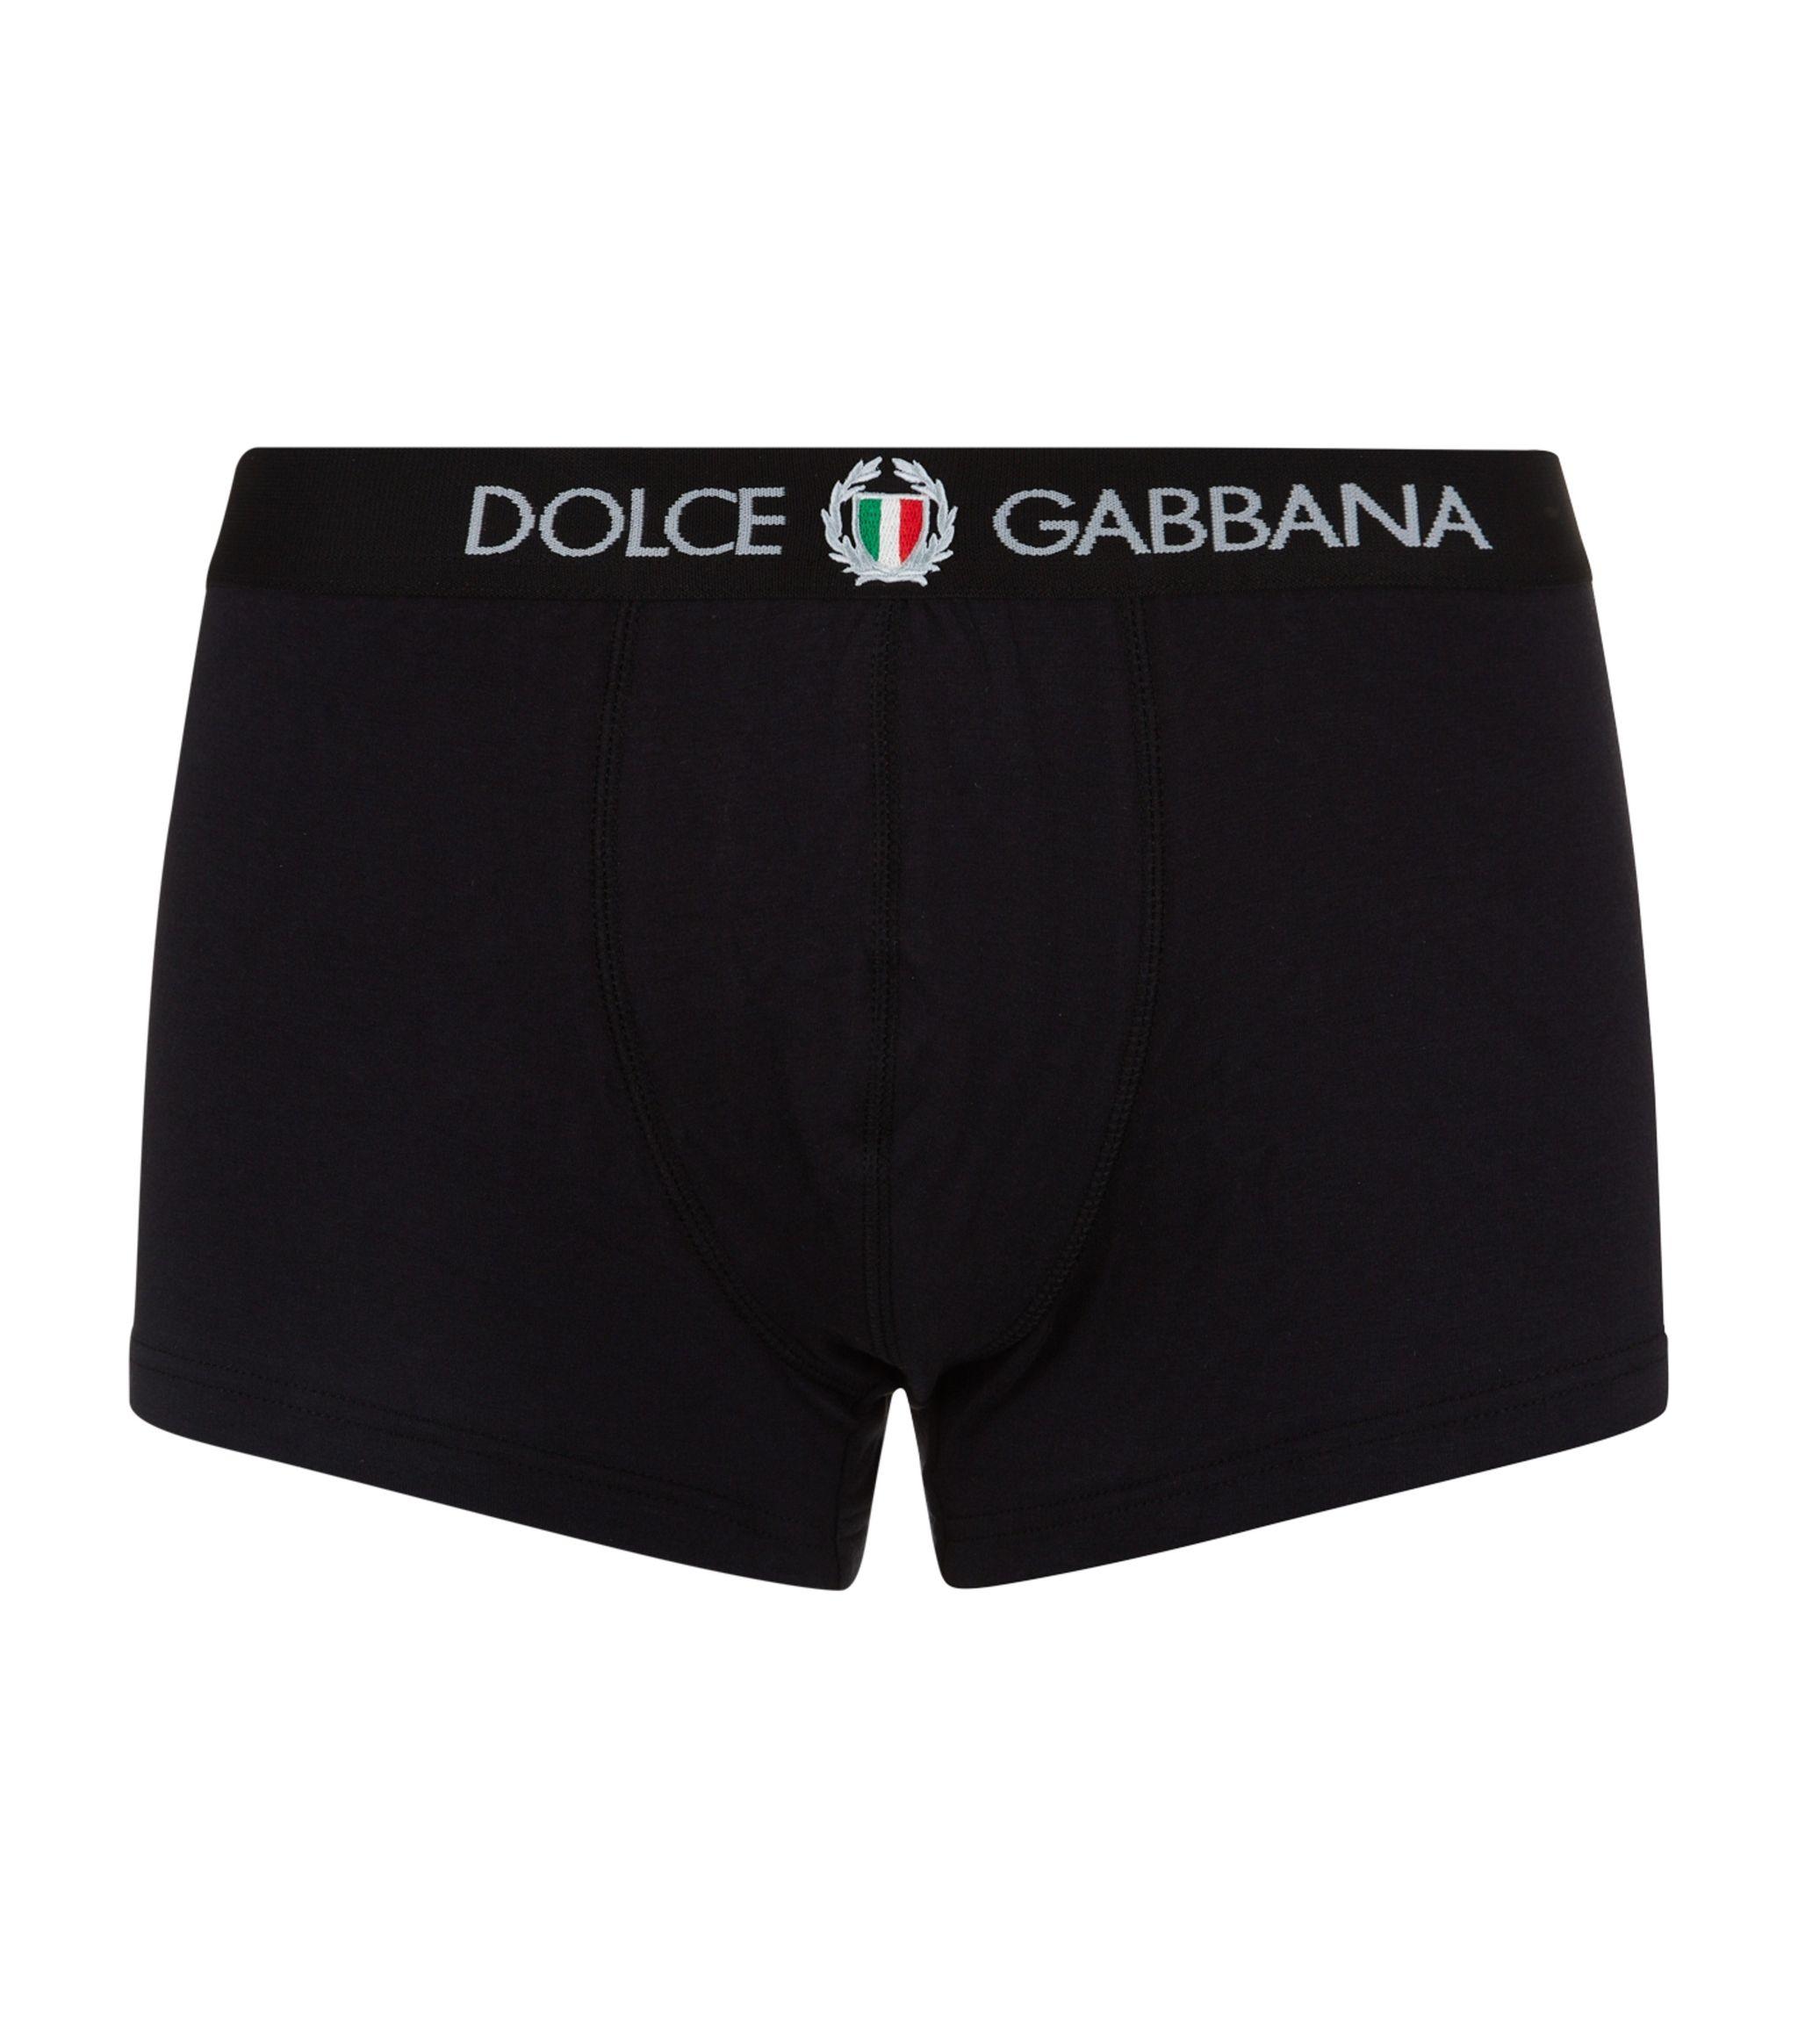 Dolce & Gabbana Cotton Sport Crest Boxer Briefs in Black for Men - Lyst